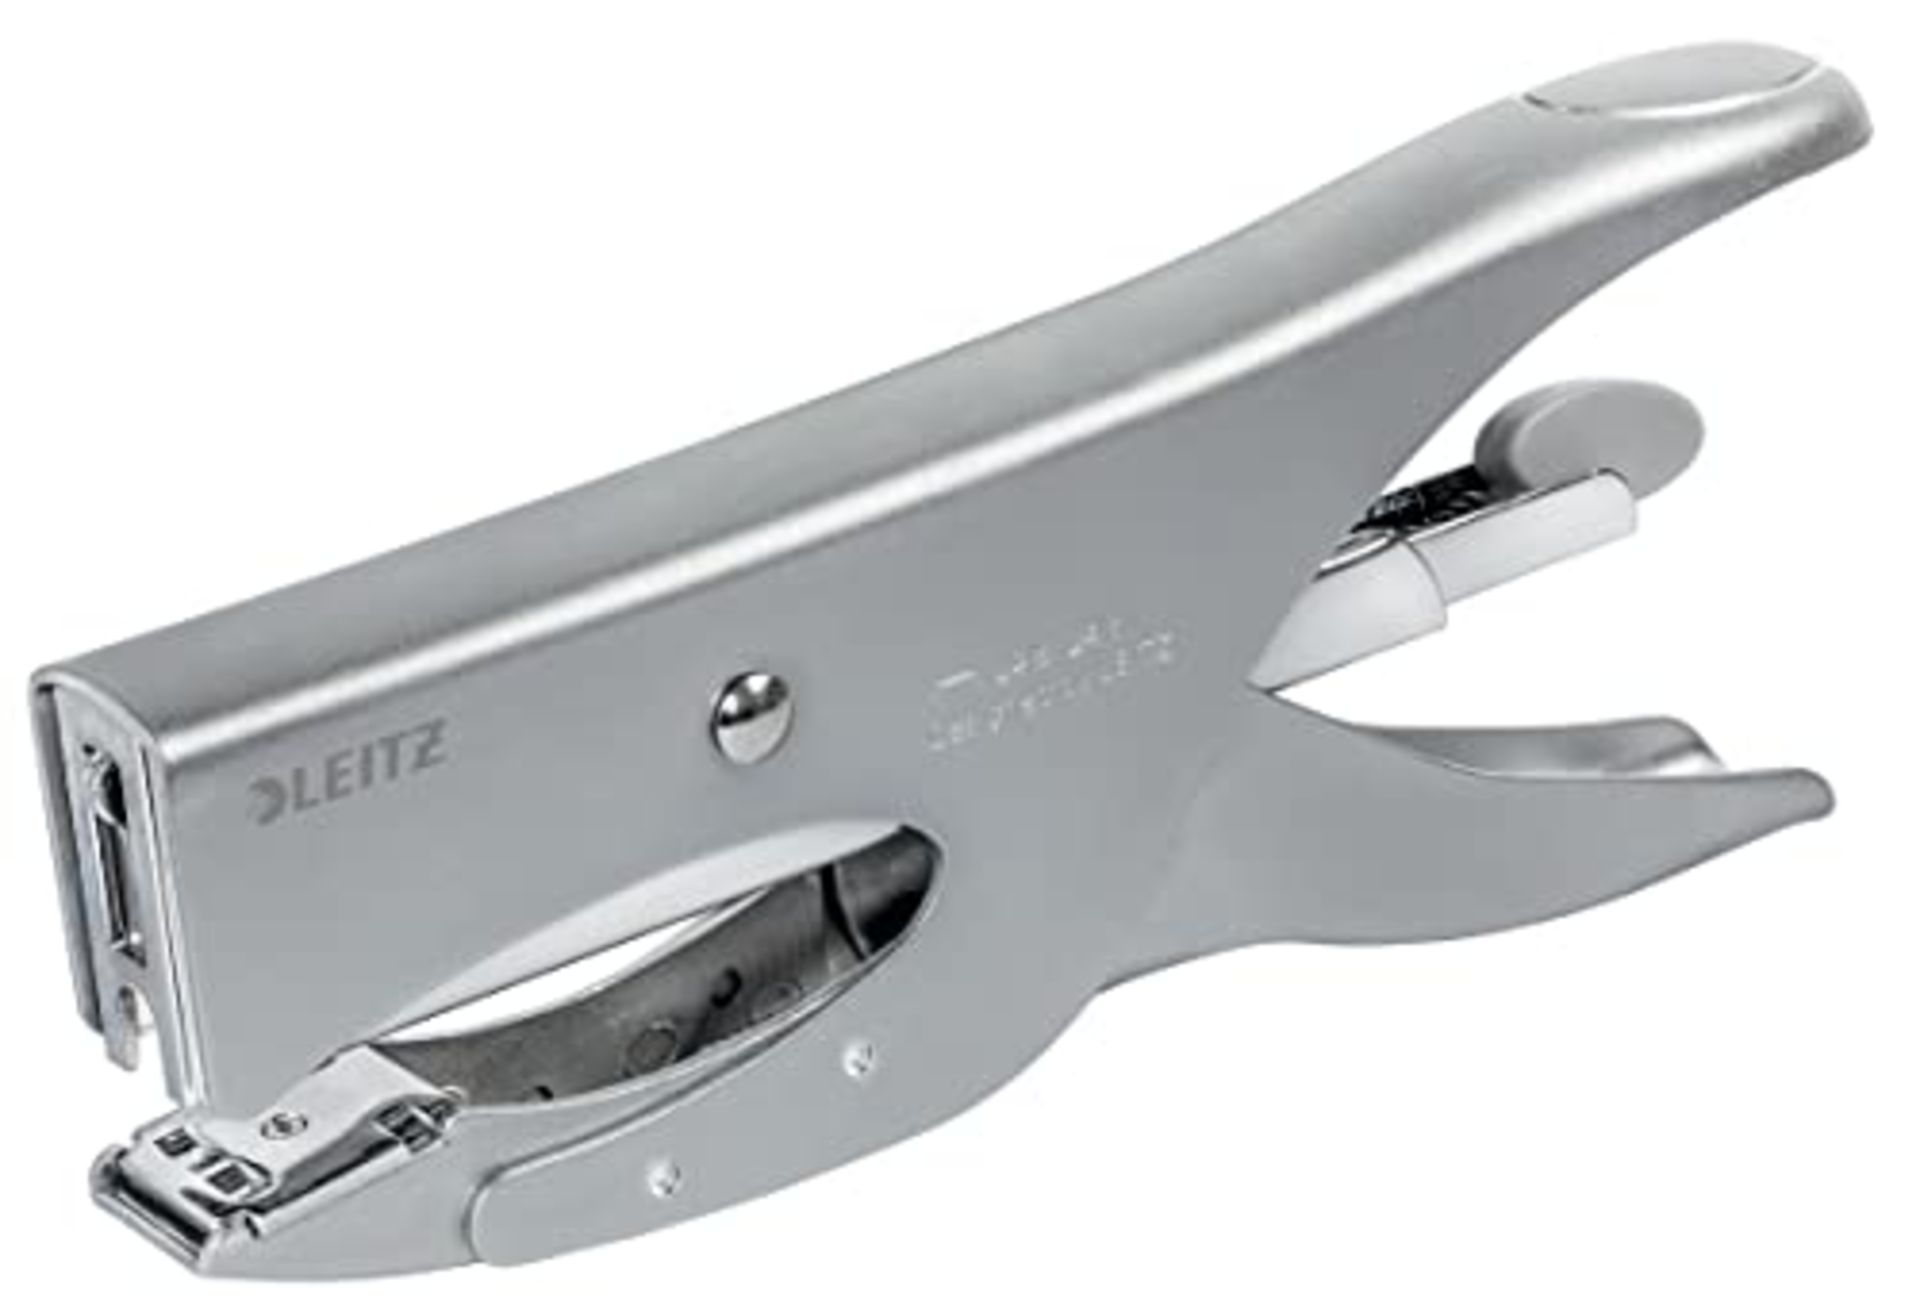 Leitz stapler, For 40 sheets, Ergonomic design made of metal, Rear loading mechanism,